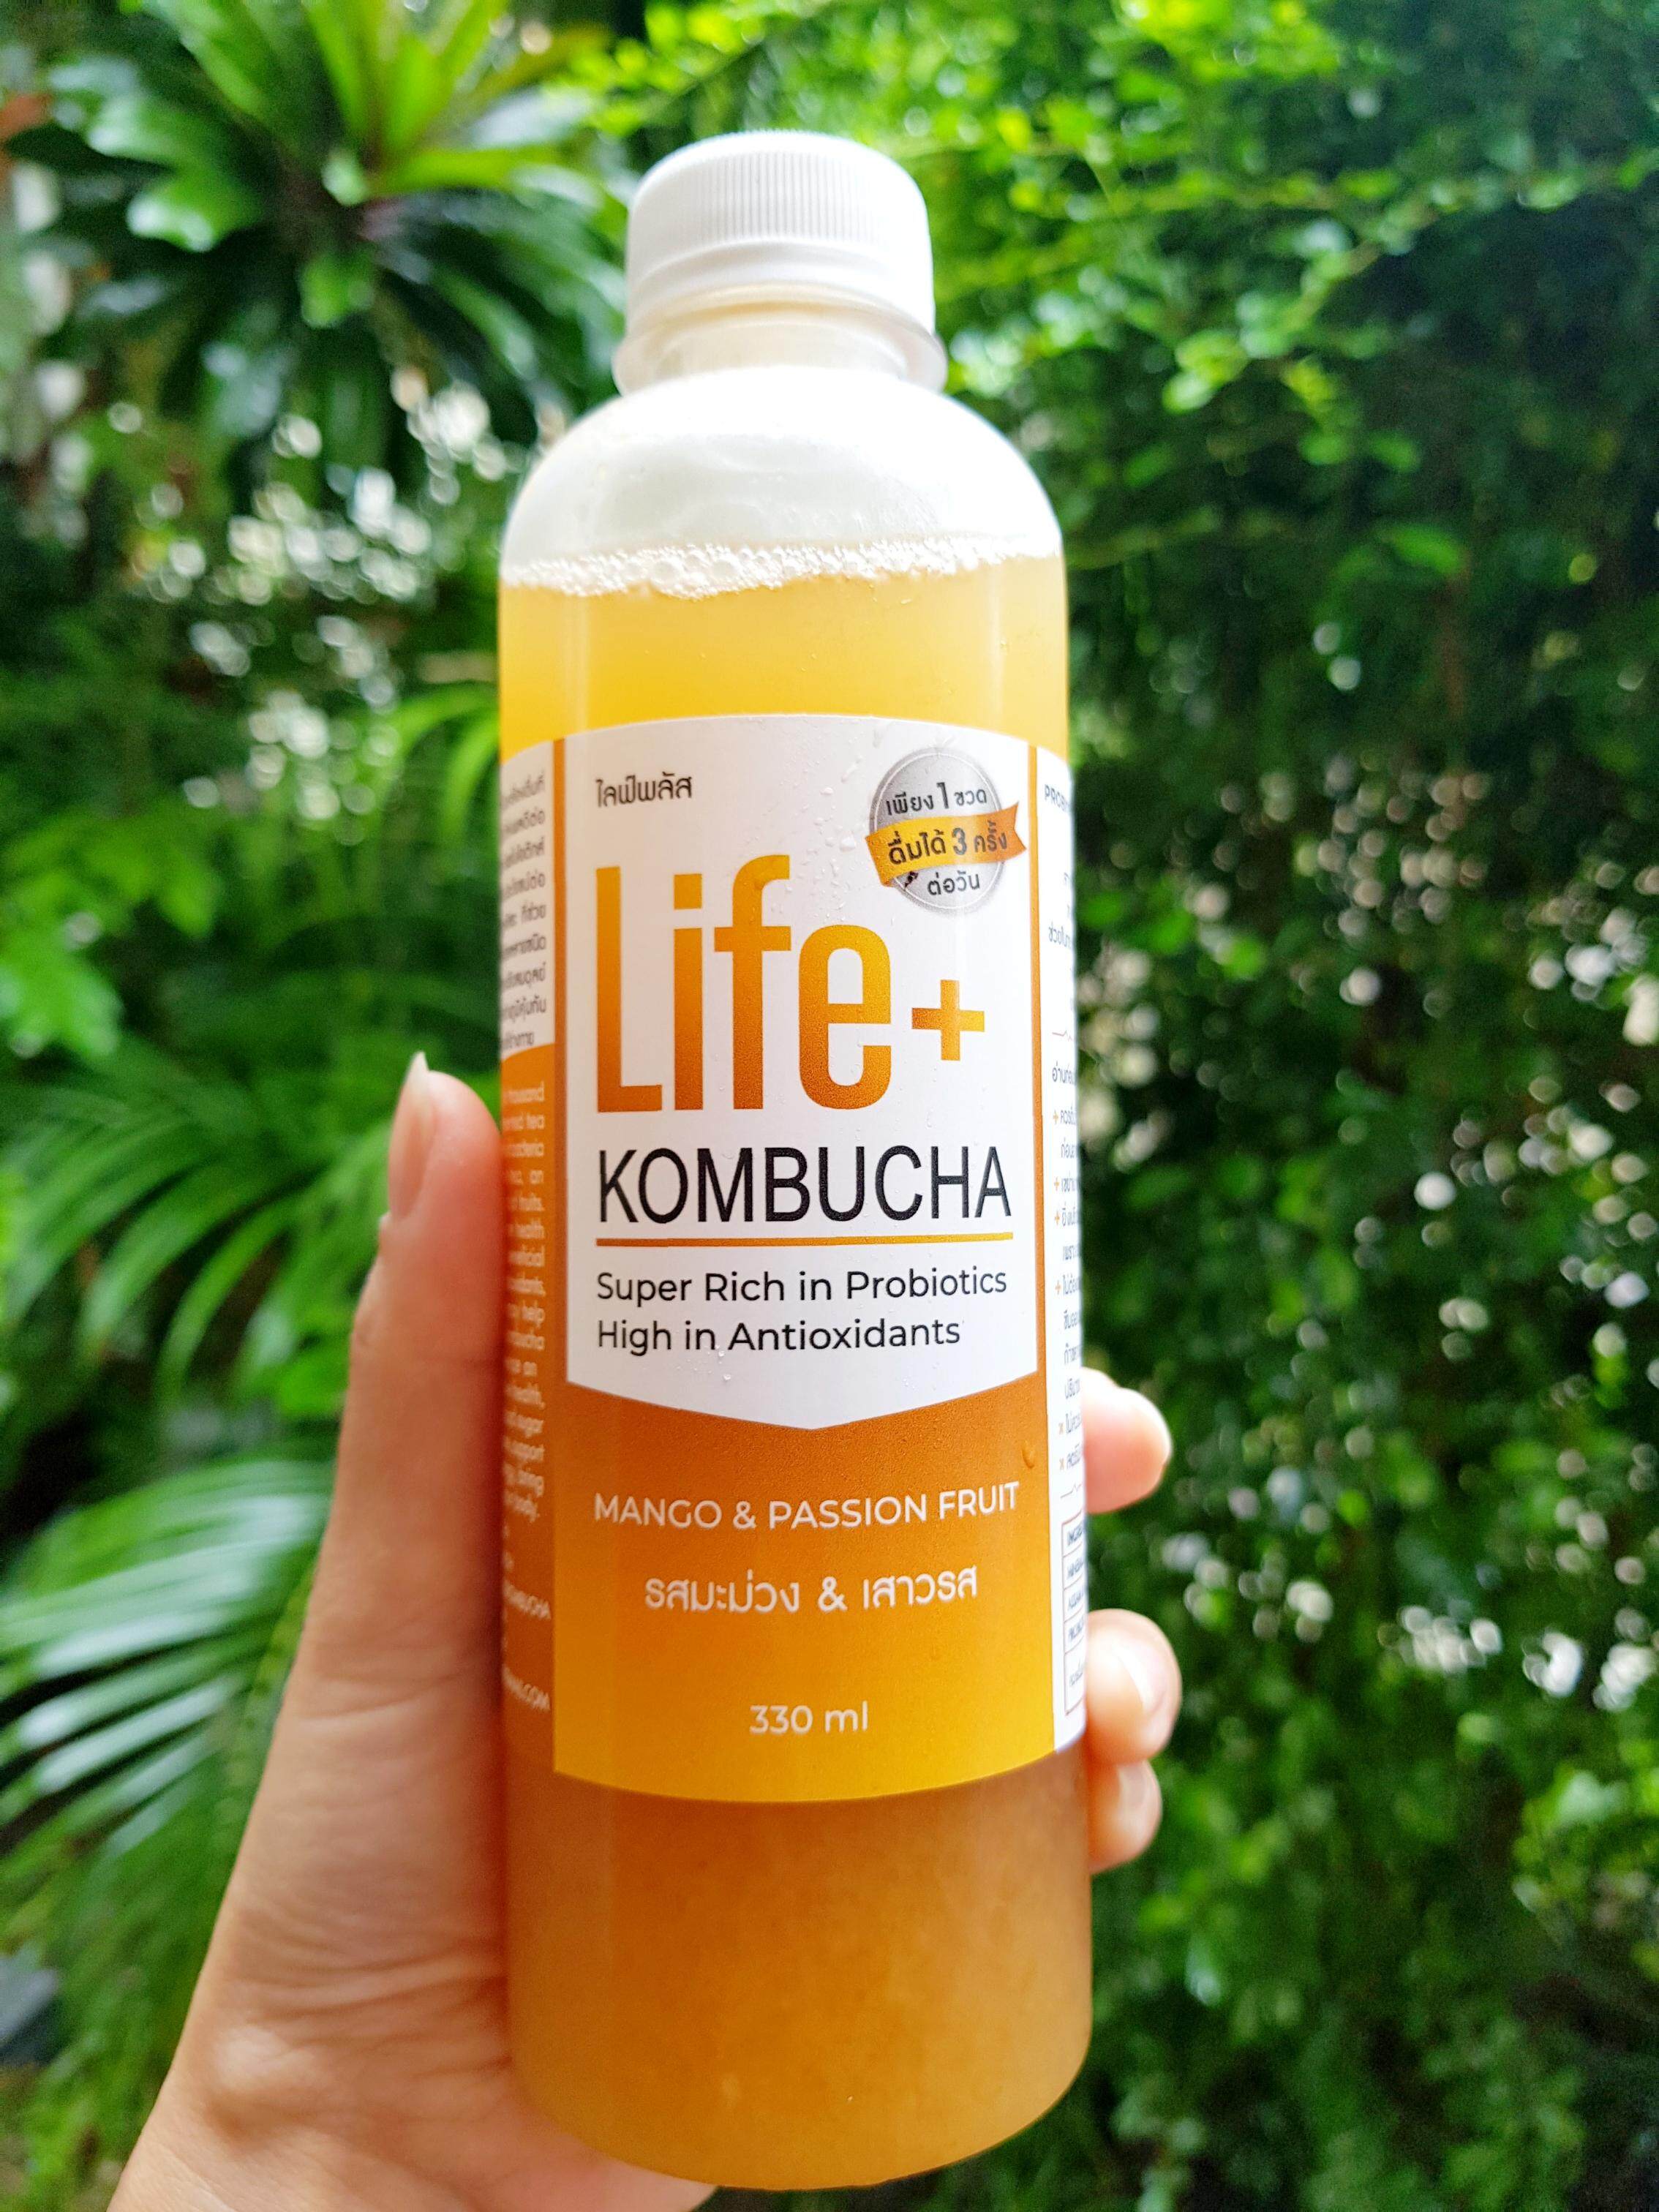 Life+ KOMBUCHA raw organic 330ml รสมะม่วง&เสาวรส คอมบูชา คอมบูชะ ชาหมัก ดีท็อกซ์ ท้องผูก โพรไบโอติก สารต้านอนุมูลอิสระ คอมบูฉะ detox probiotic antioxidant สุขภาพ